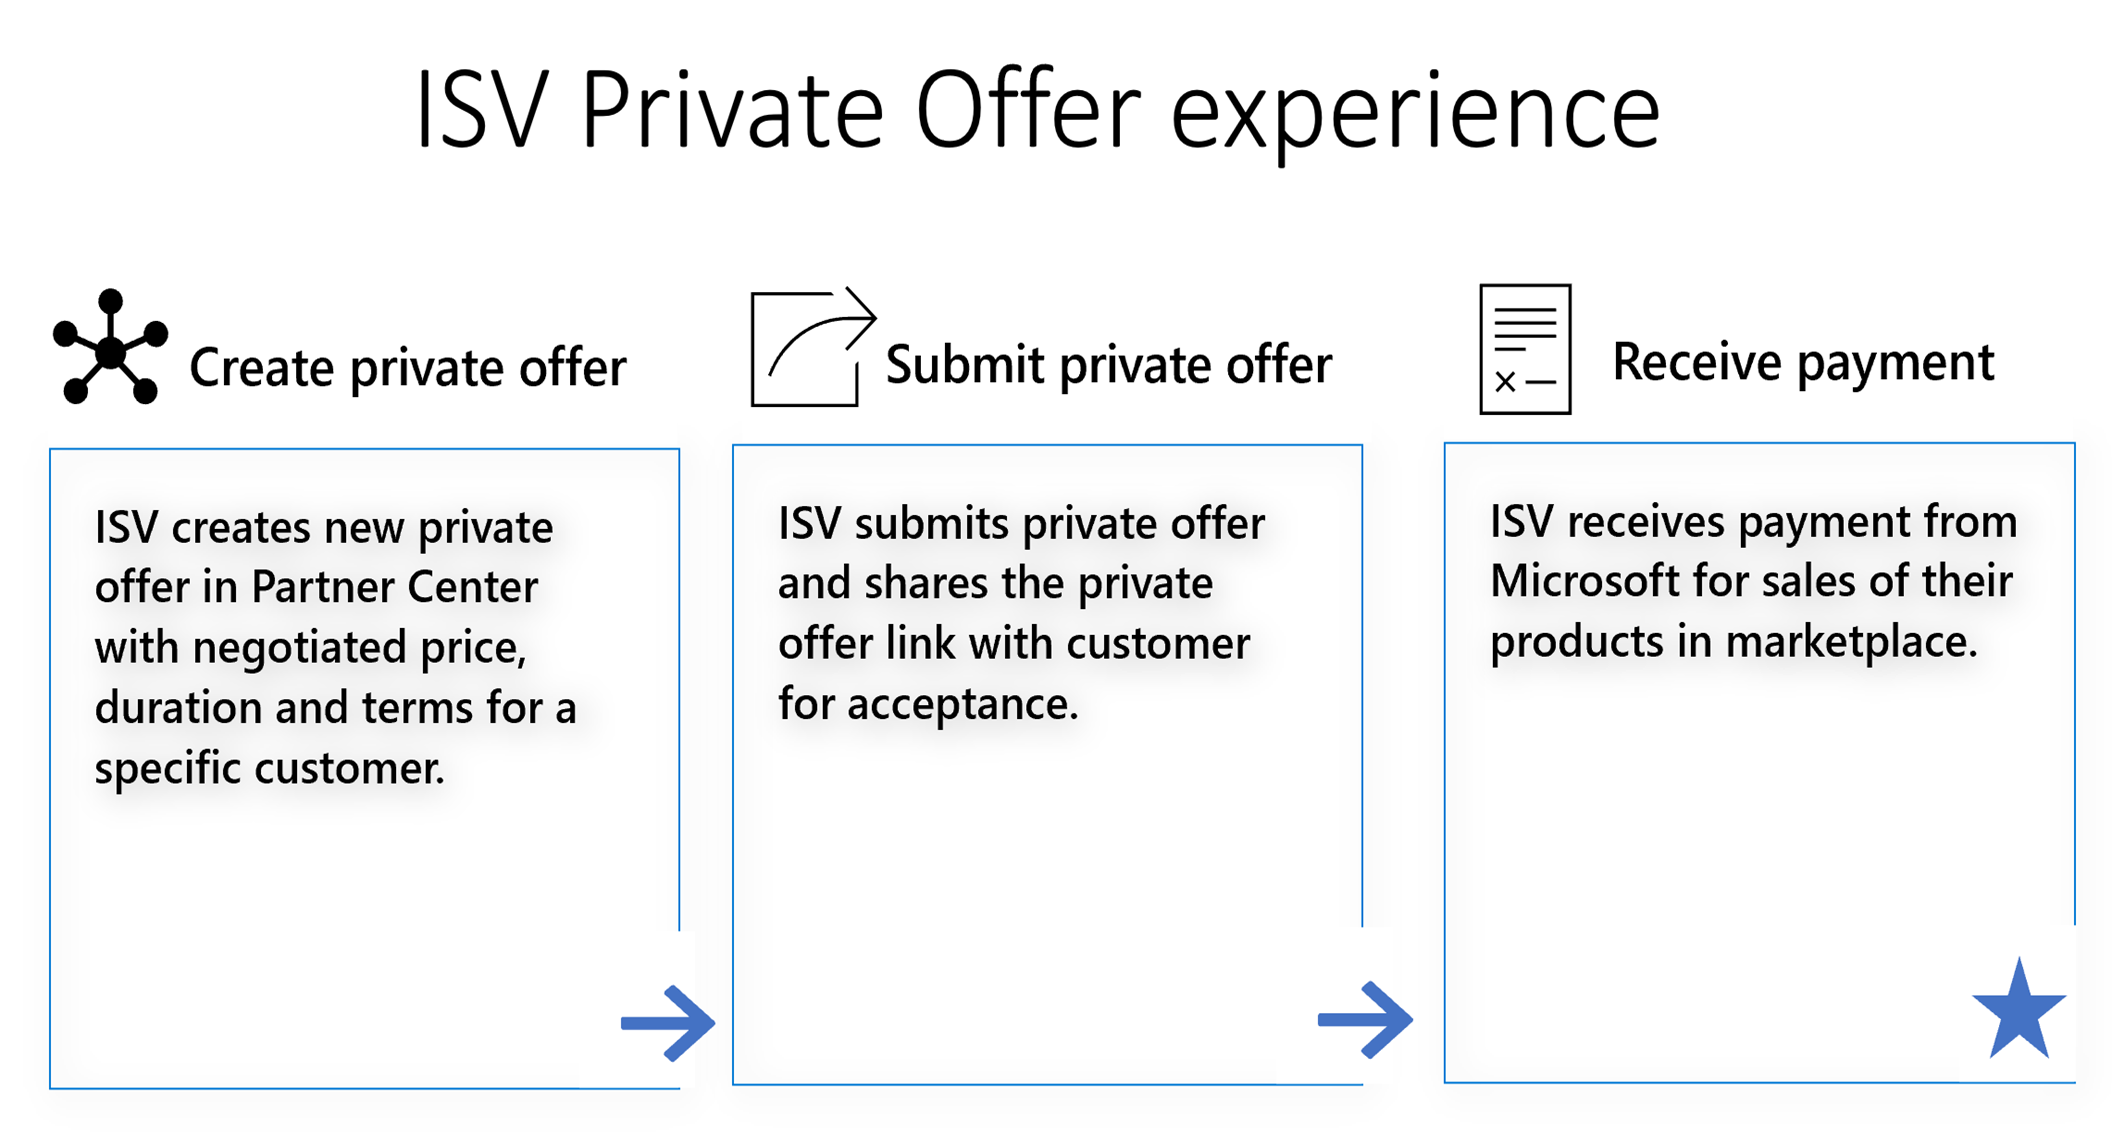 Visar utvecklingen av den privata ISV-erbjudandeupplevelsen med kunder.